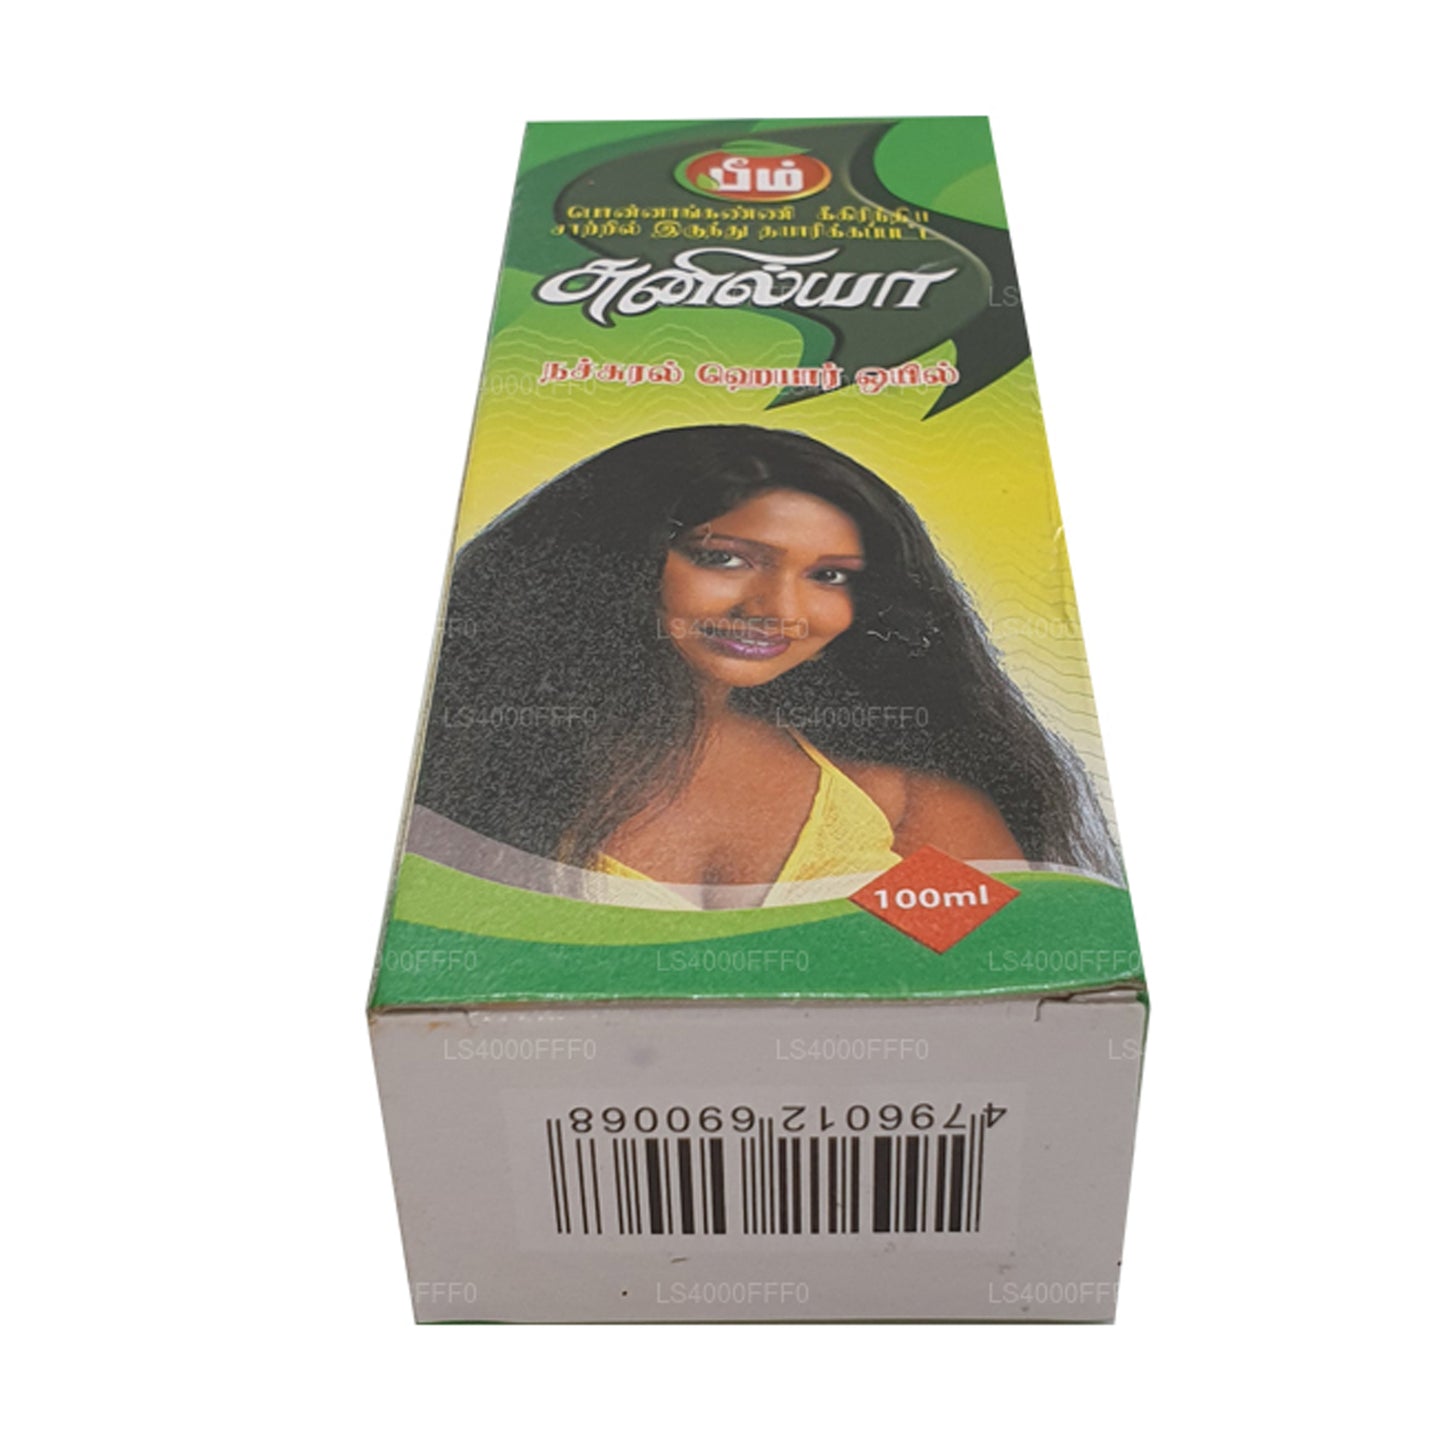 Beam Sunilya Hair Oil (100ml)